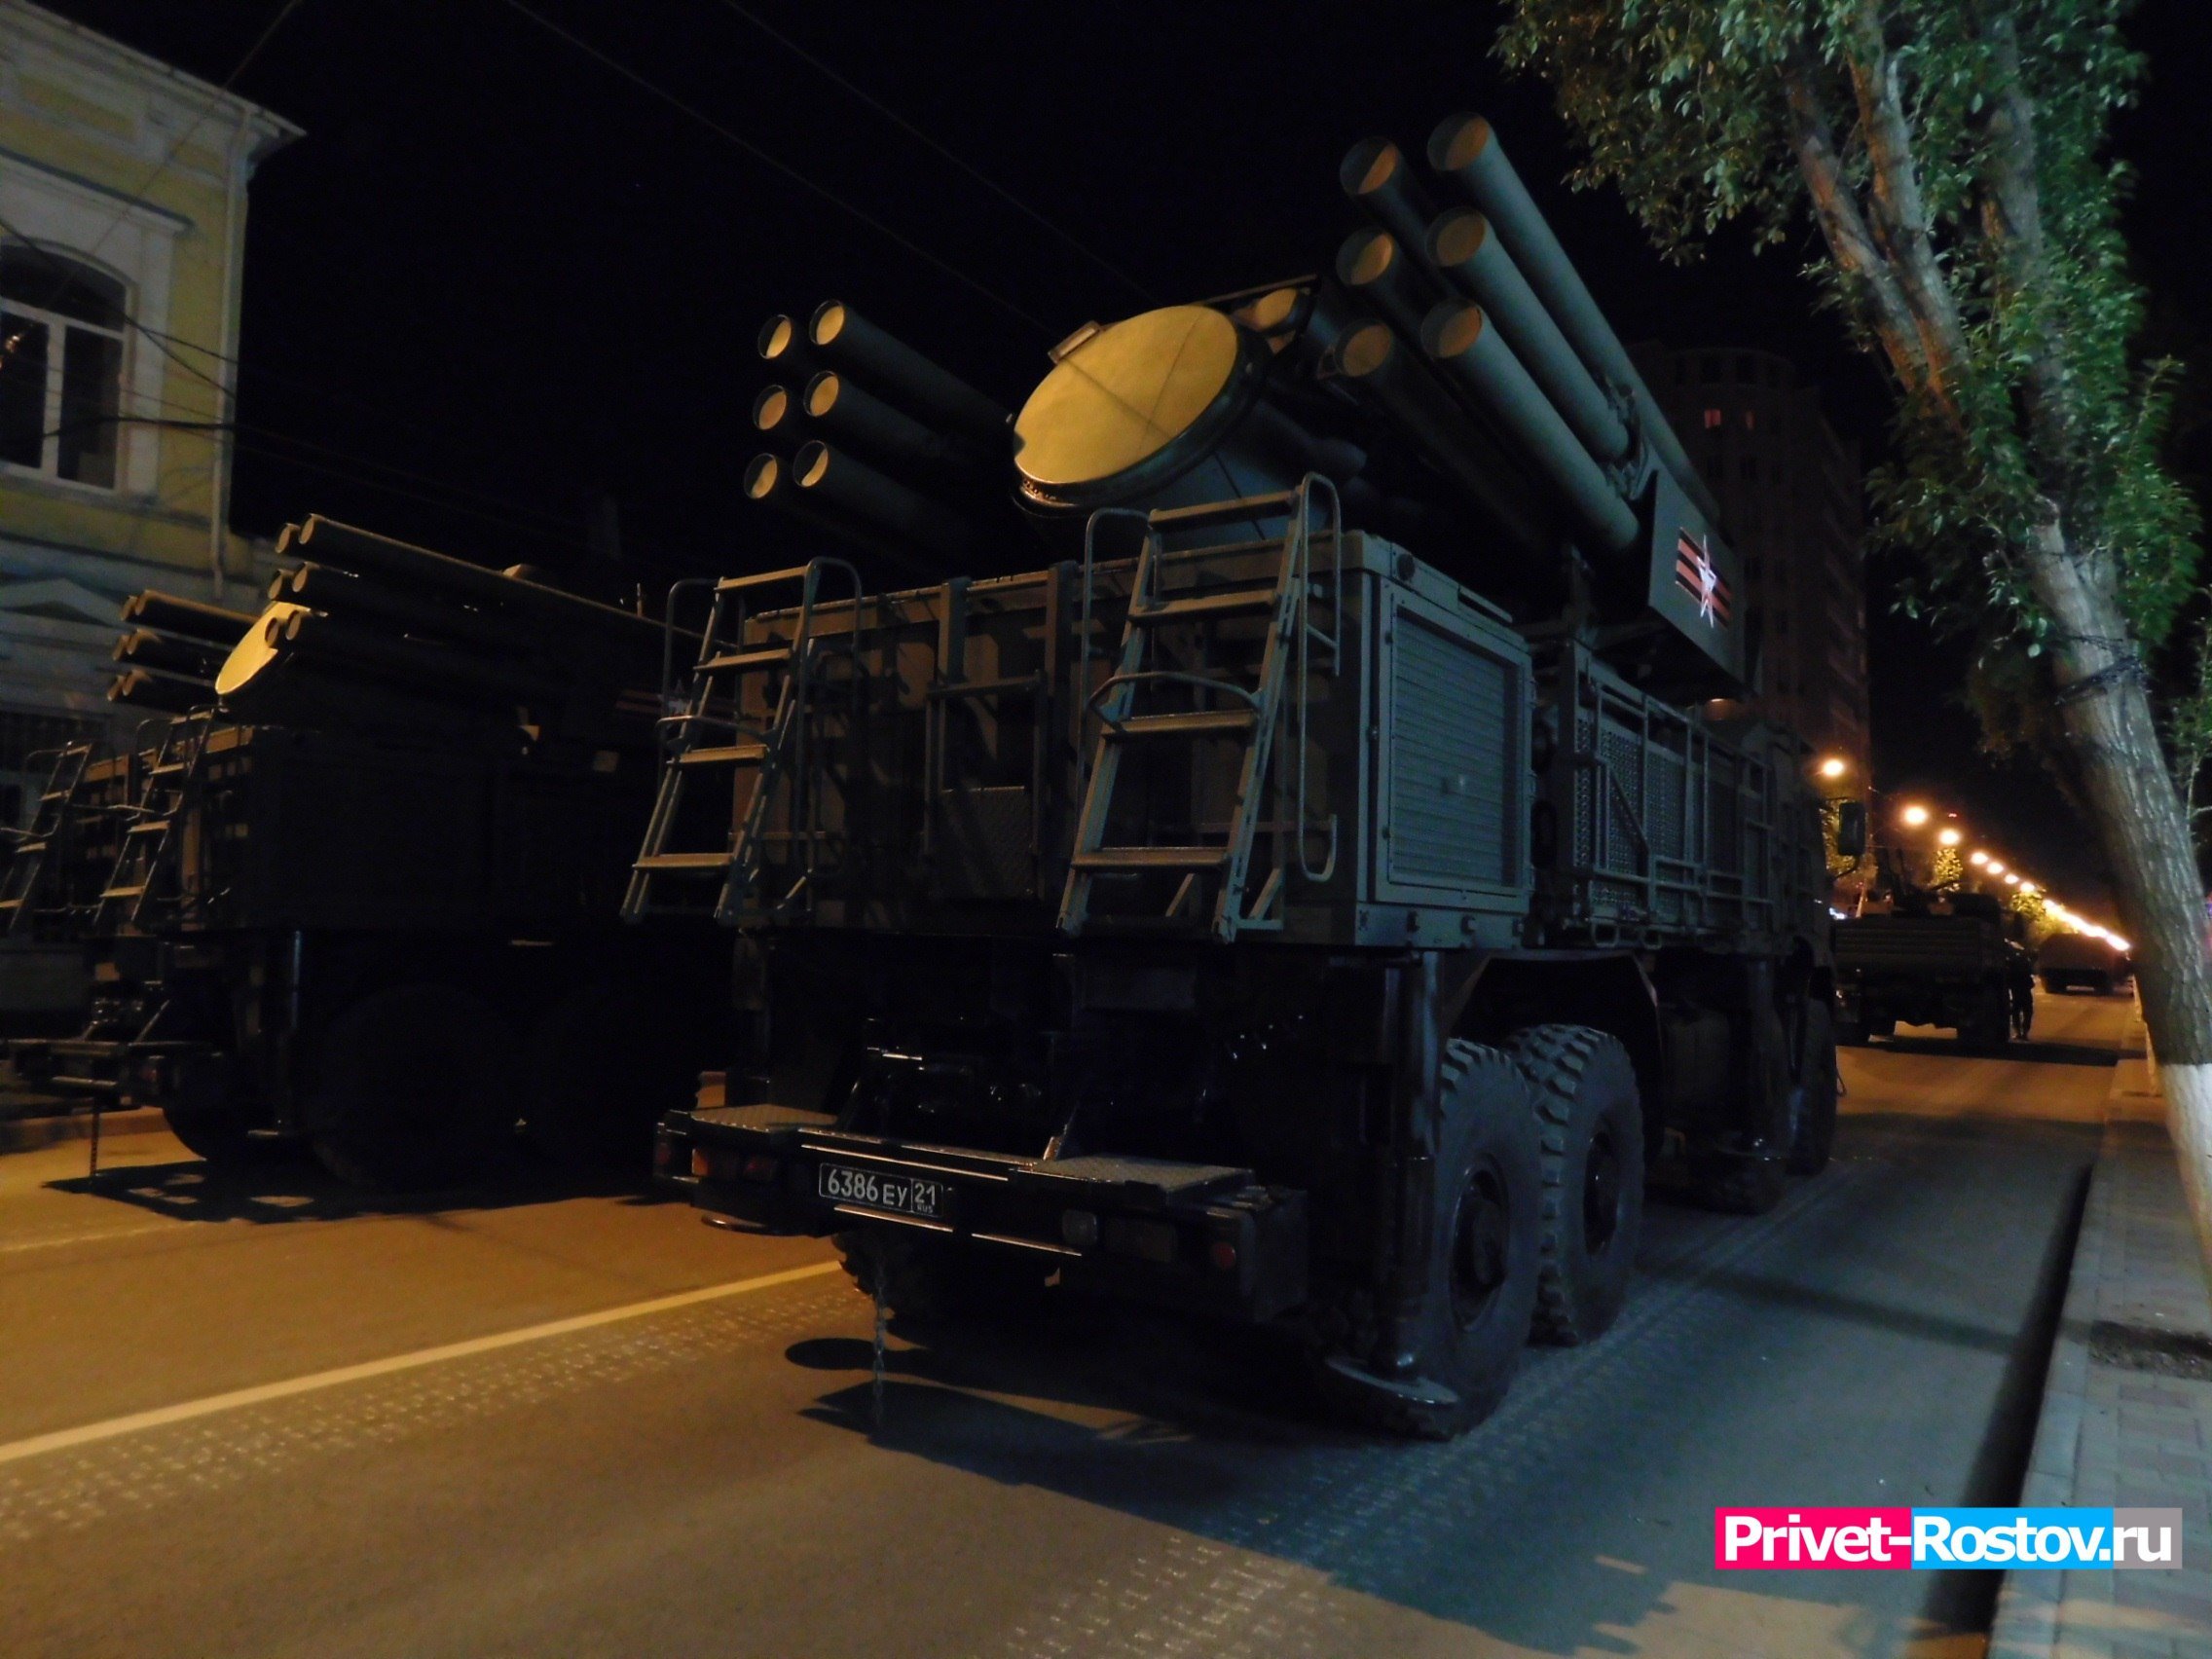 Политолог Сухарь разъяснил поставки для армии Украины ракет, способных достать до Ростова